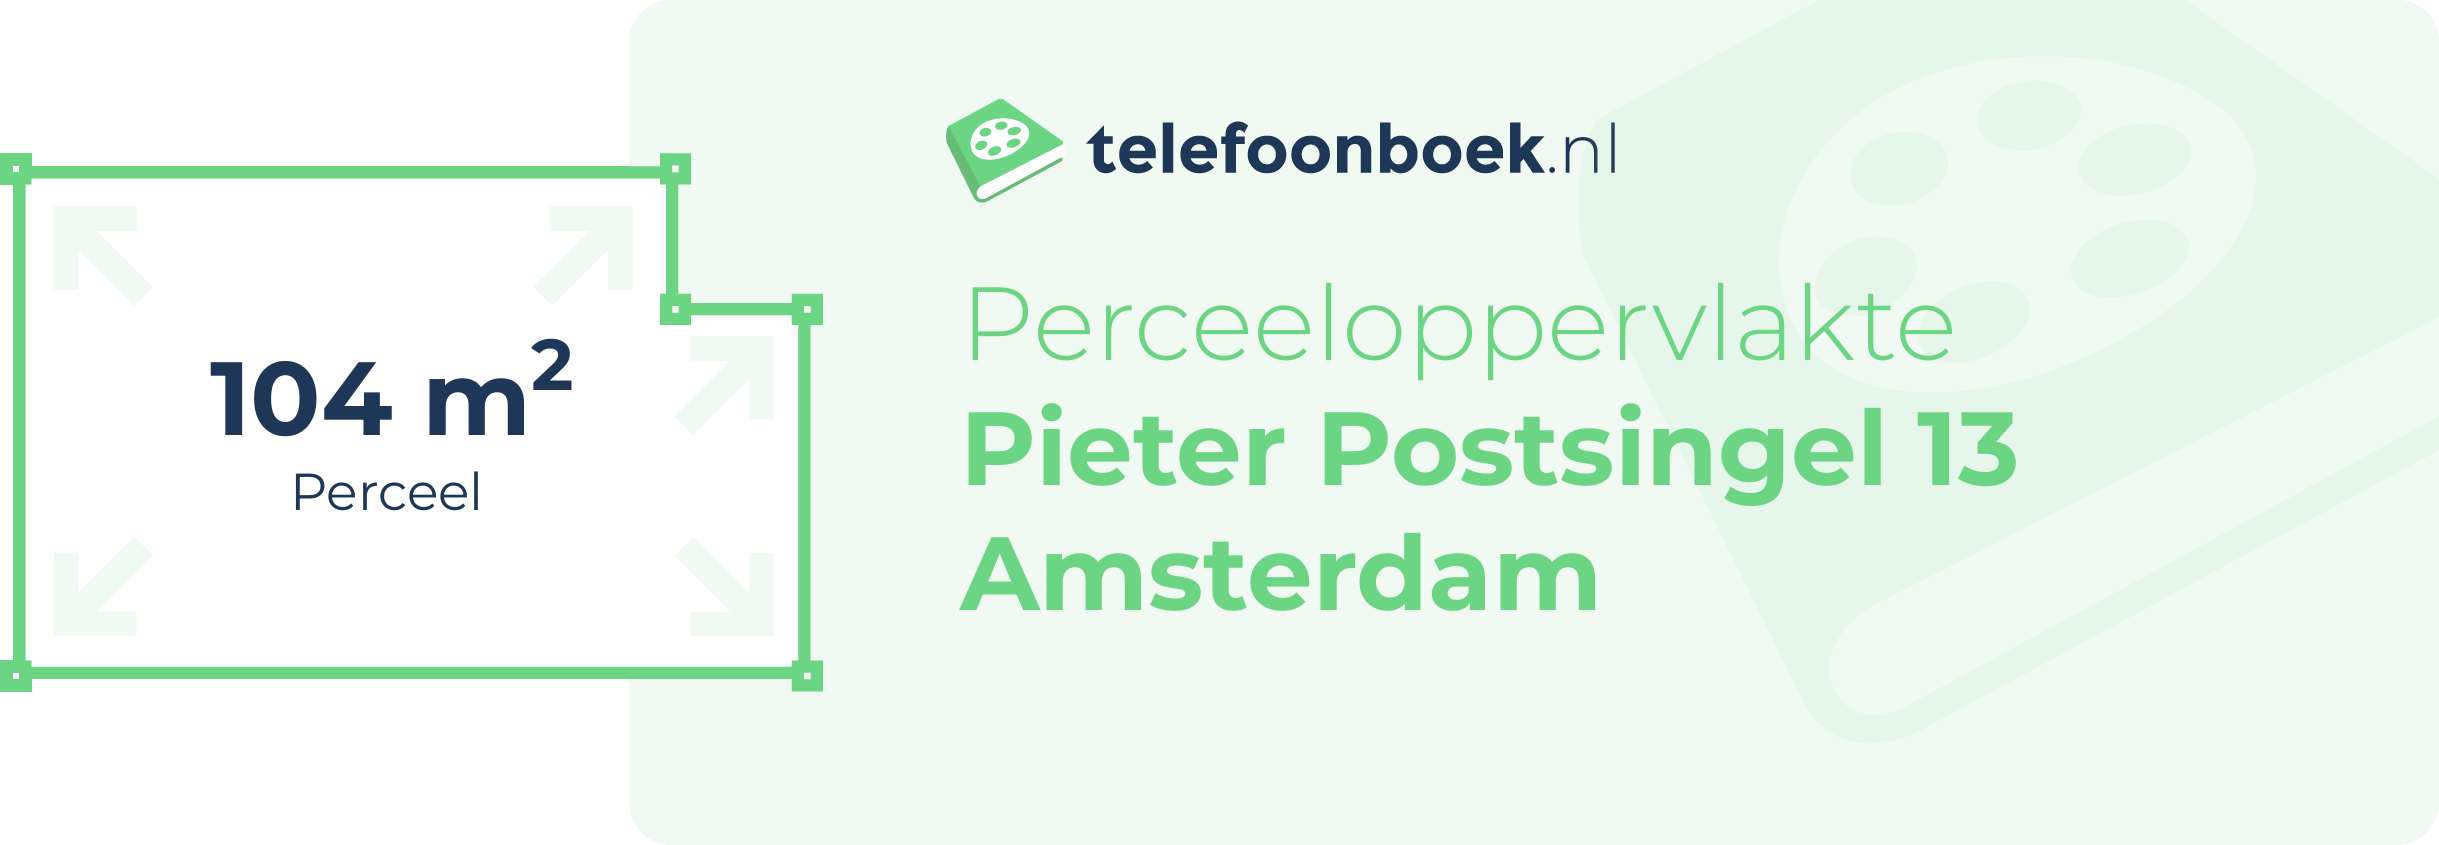 Perceeloppervlakte Pieter Postsingel 13 Amsterdam